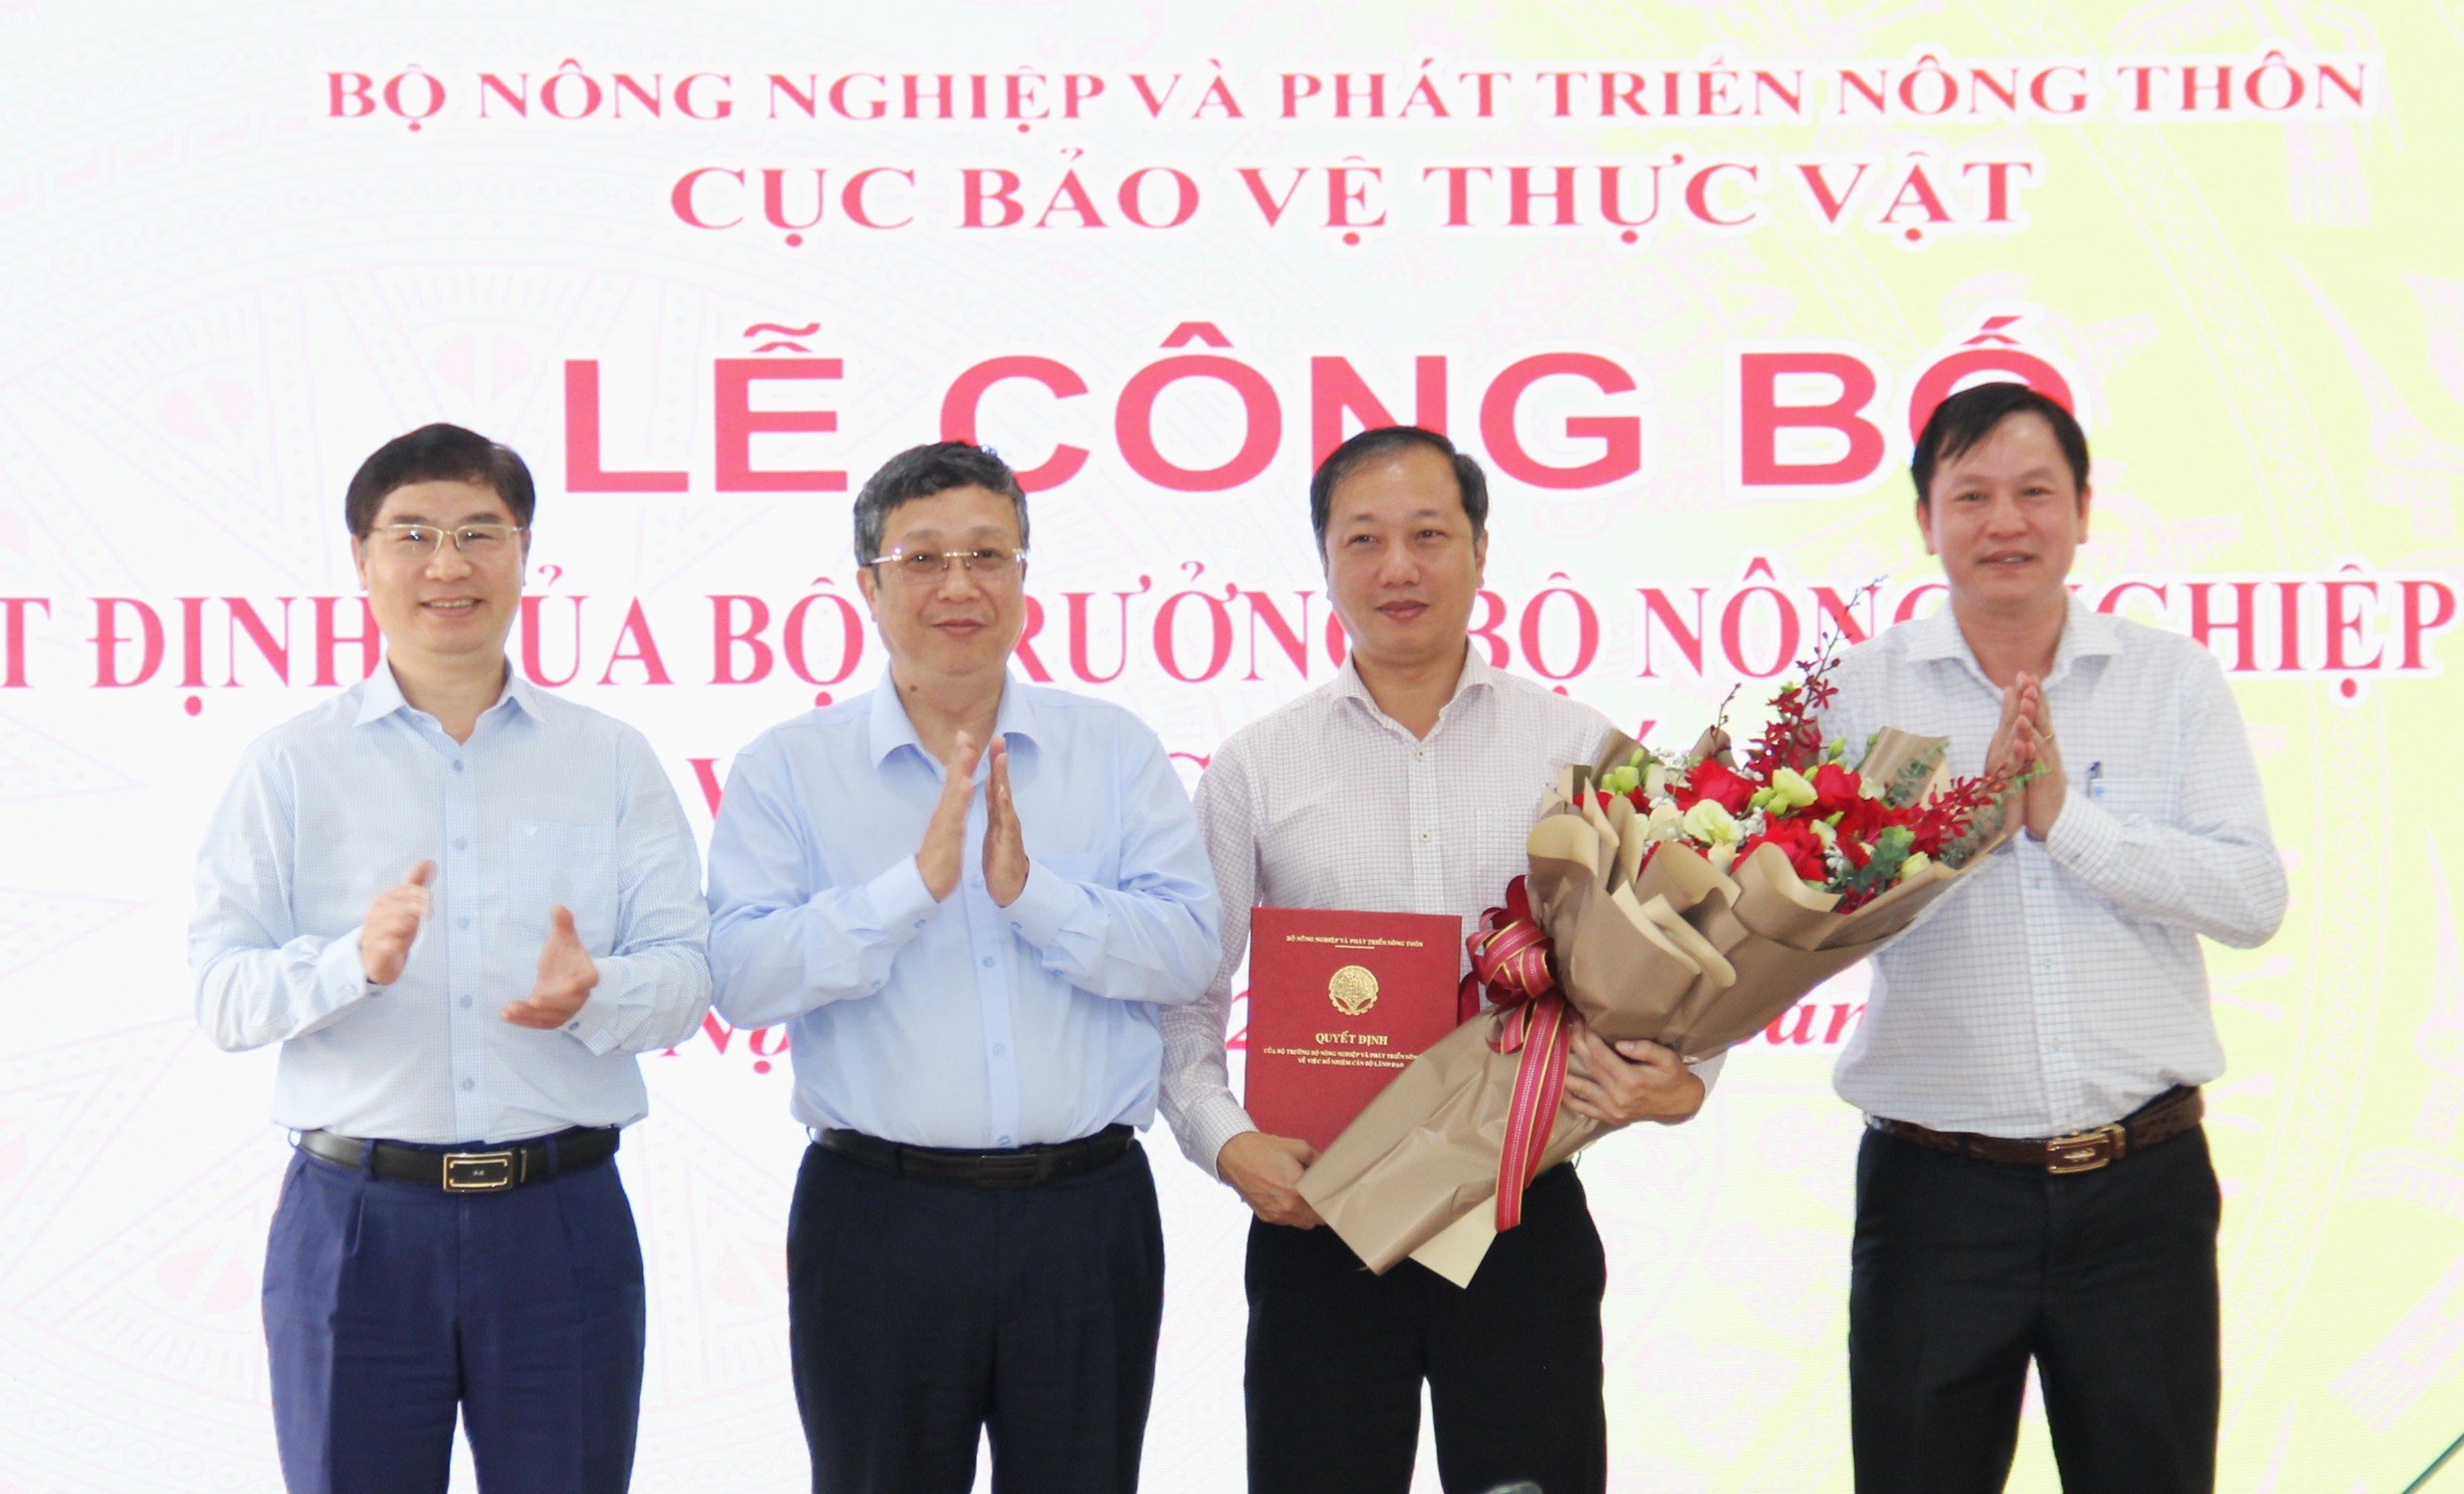 Ông Nguyễn Quang Hiếu được Bộ NNPTNT bổ nhiệm làm Phó Cục trưởng Cục Bảo vệ thực vật- Ảnh 2.